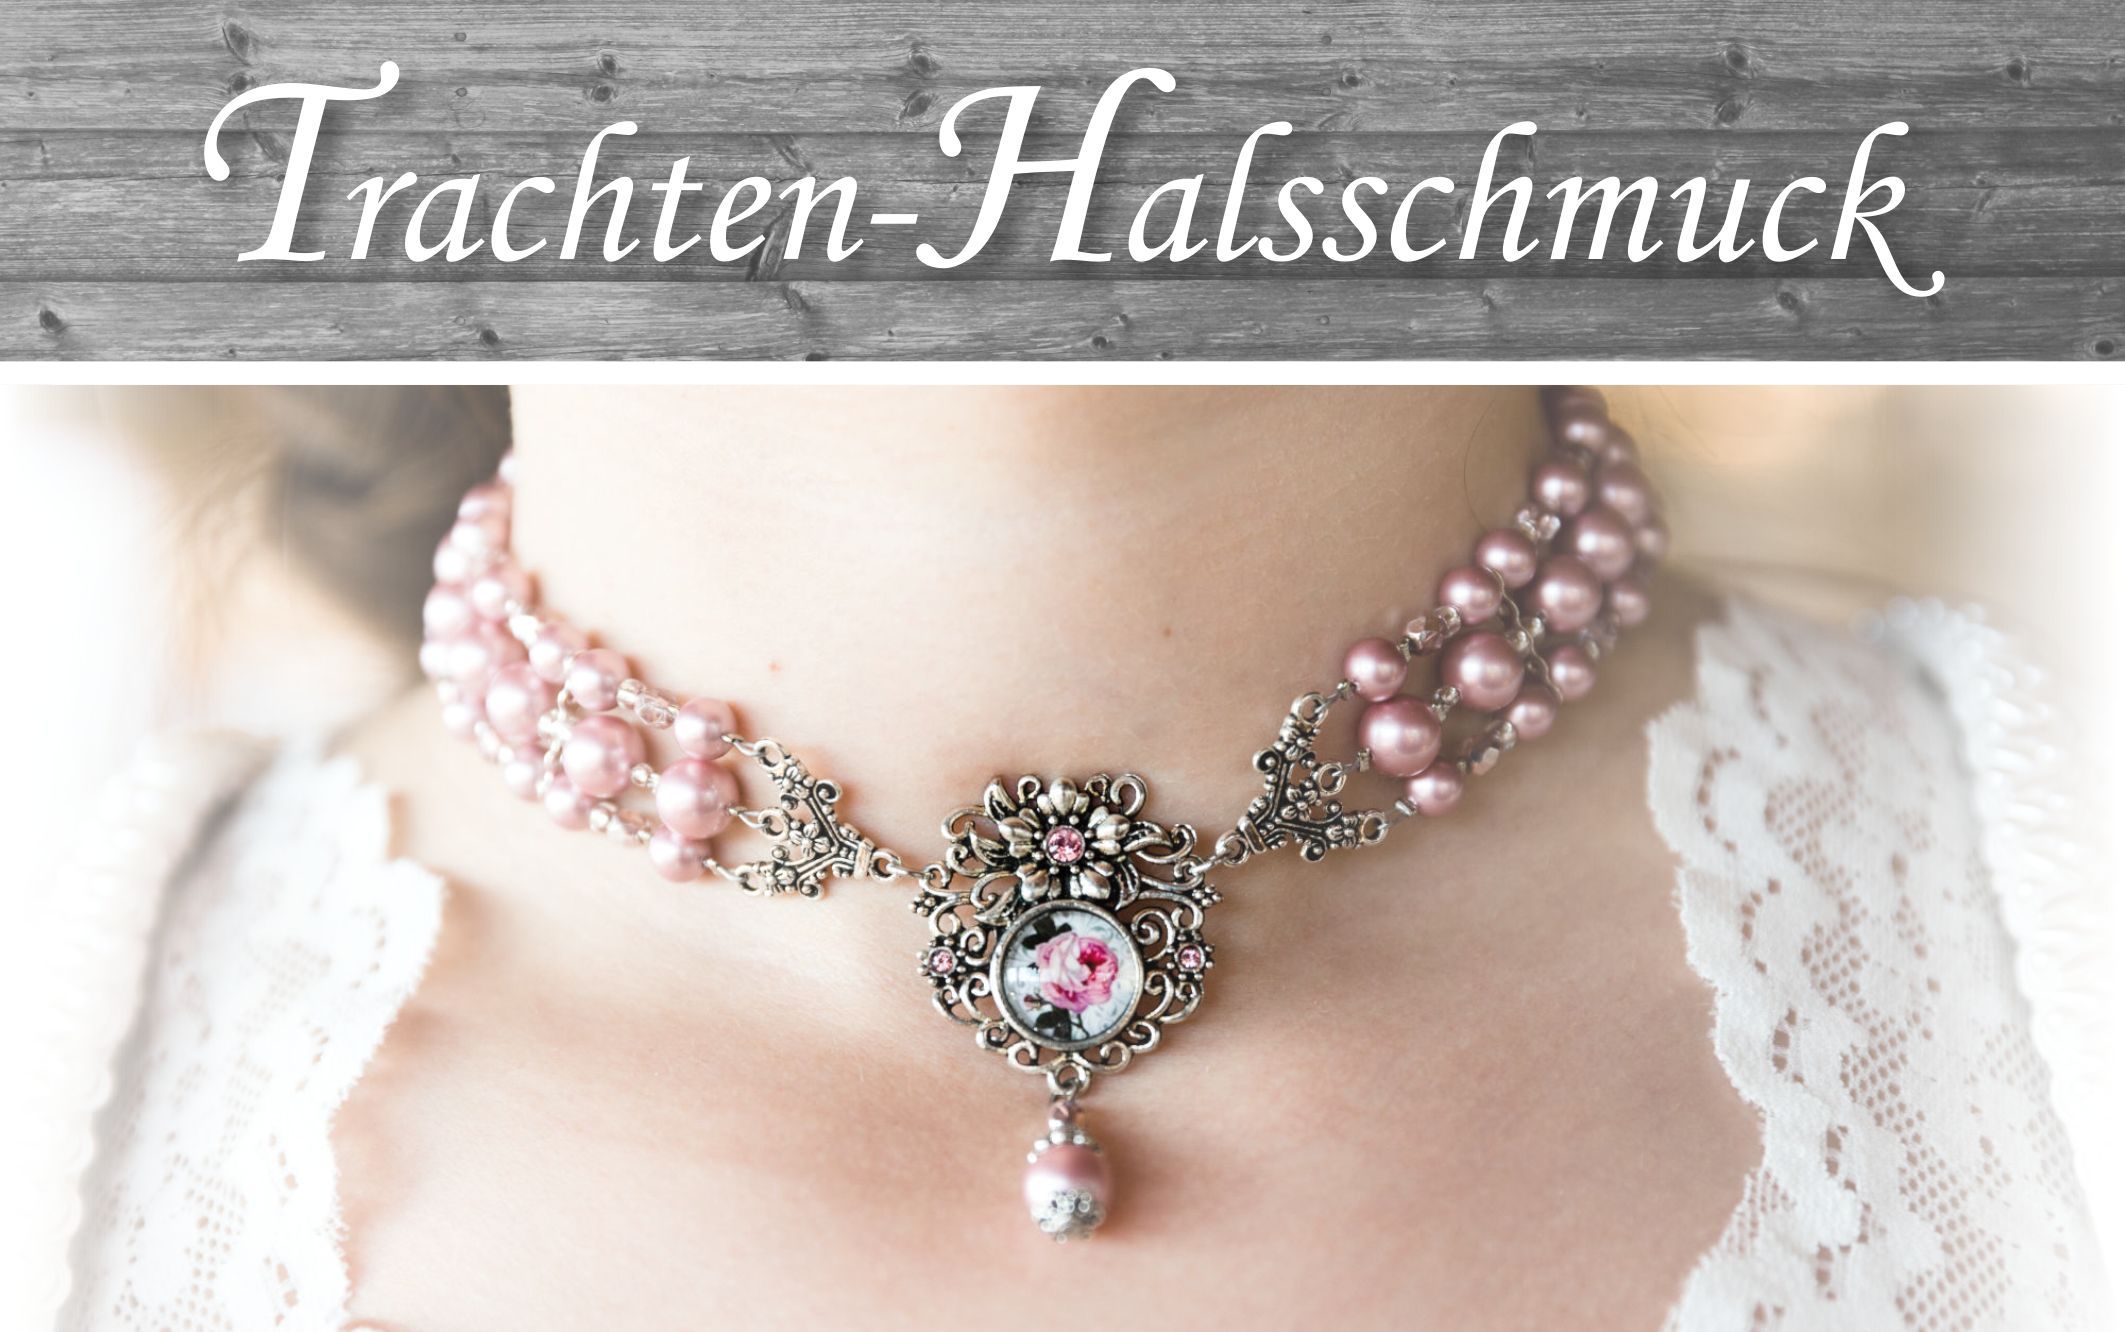 Trachtenschmuck-Halsschmuck-Trachtenkette-Dirndlkette-Trachtencollier-Dirndlcollier-Kropfkette-Kropfband-edel-außergewöhnlich-handgefertigt-rosa-Perlen